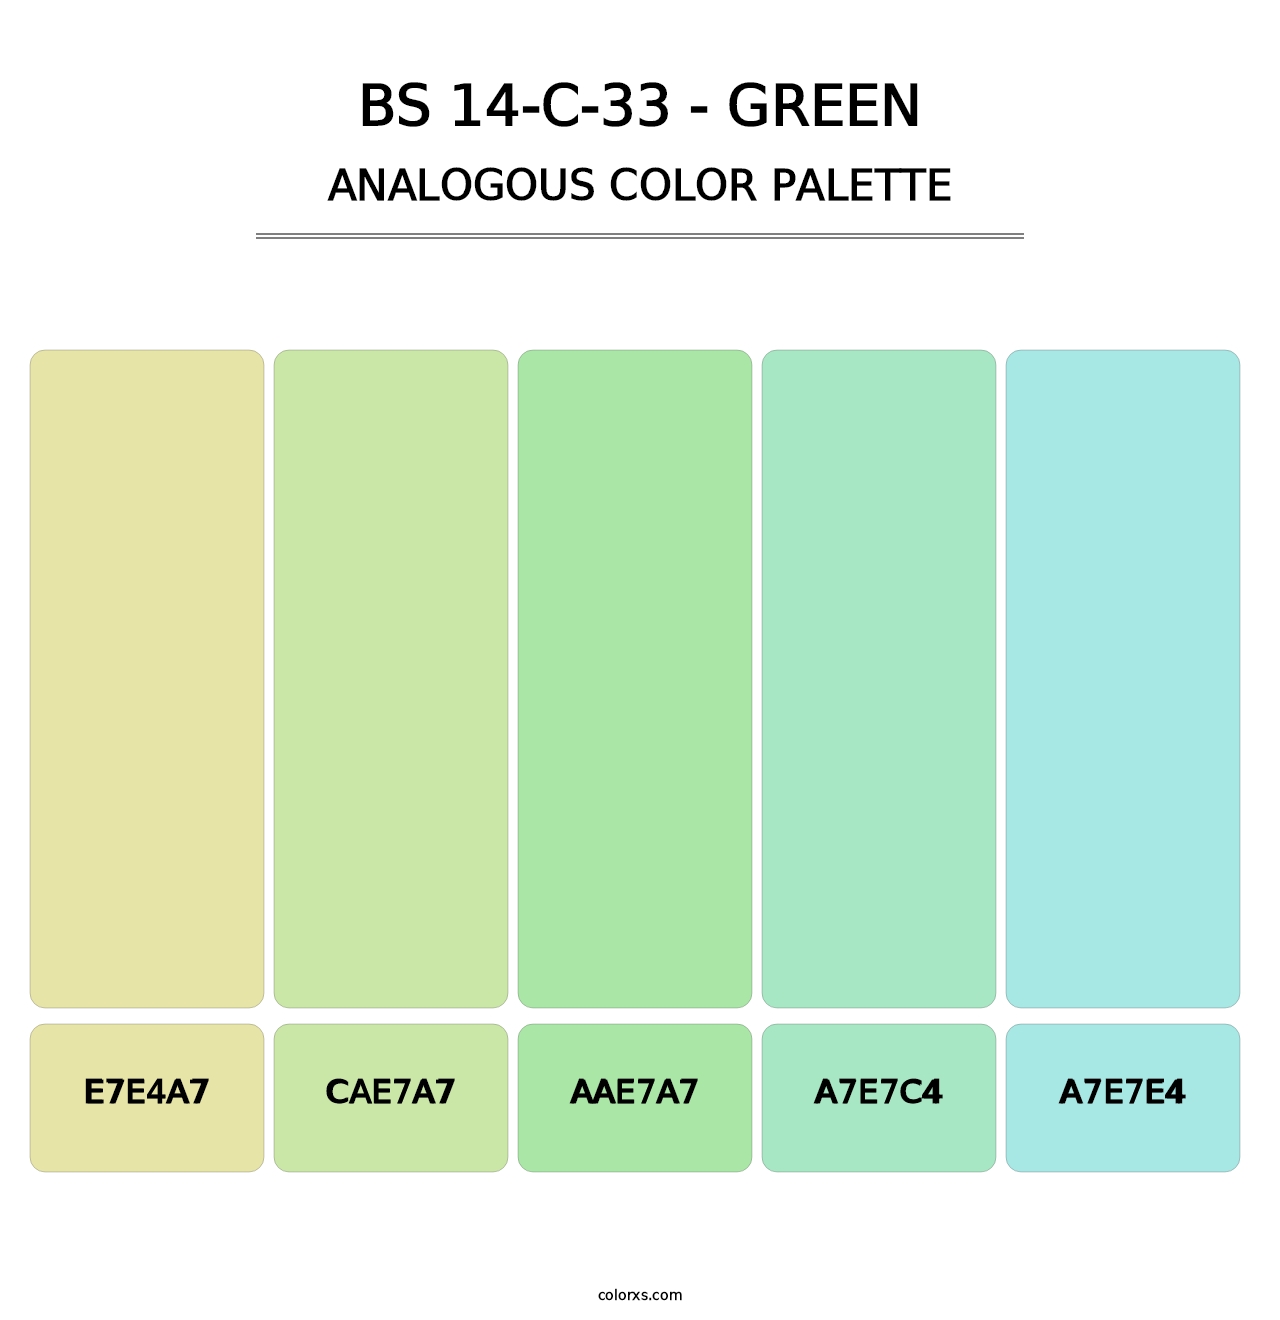 BS 14-C-33 - Green - Analogous Color Palette